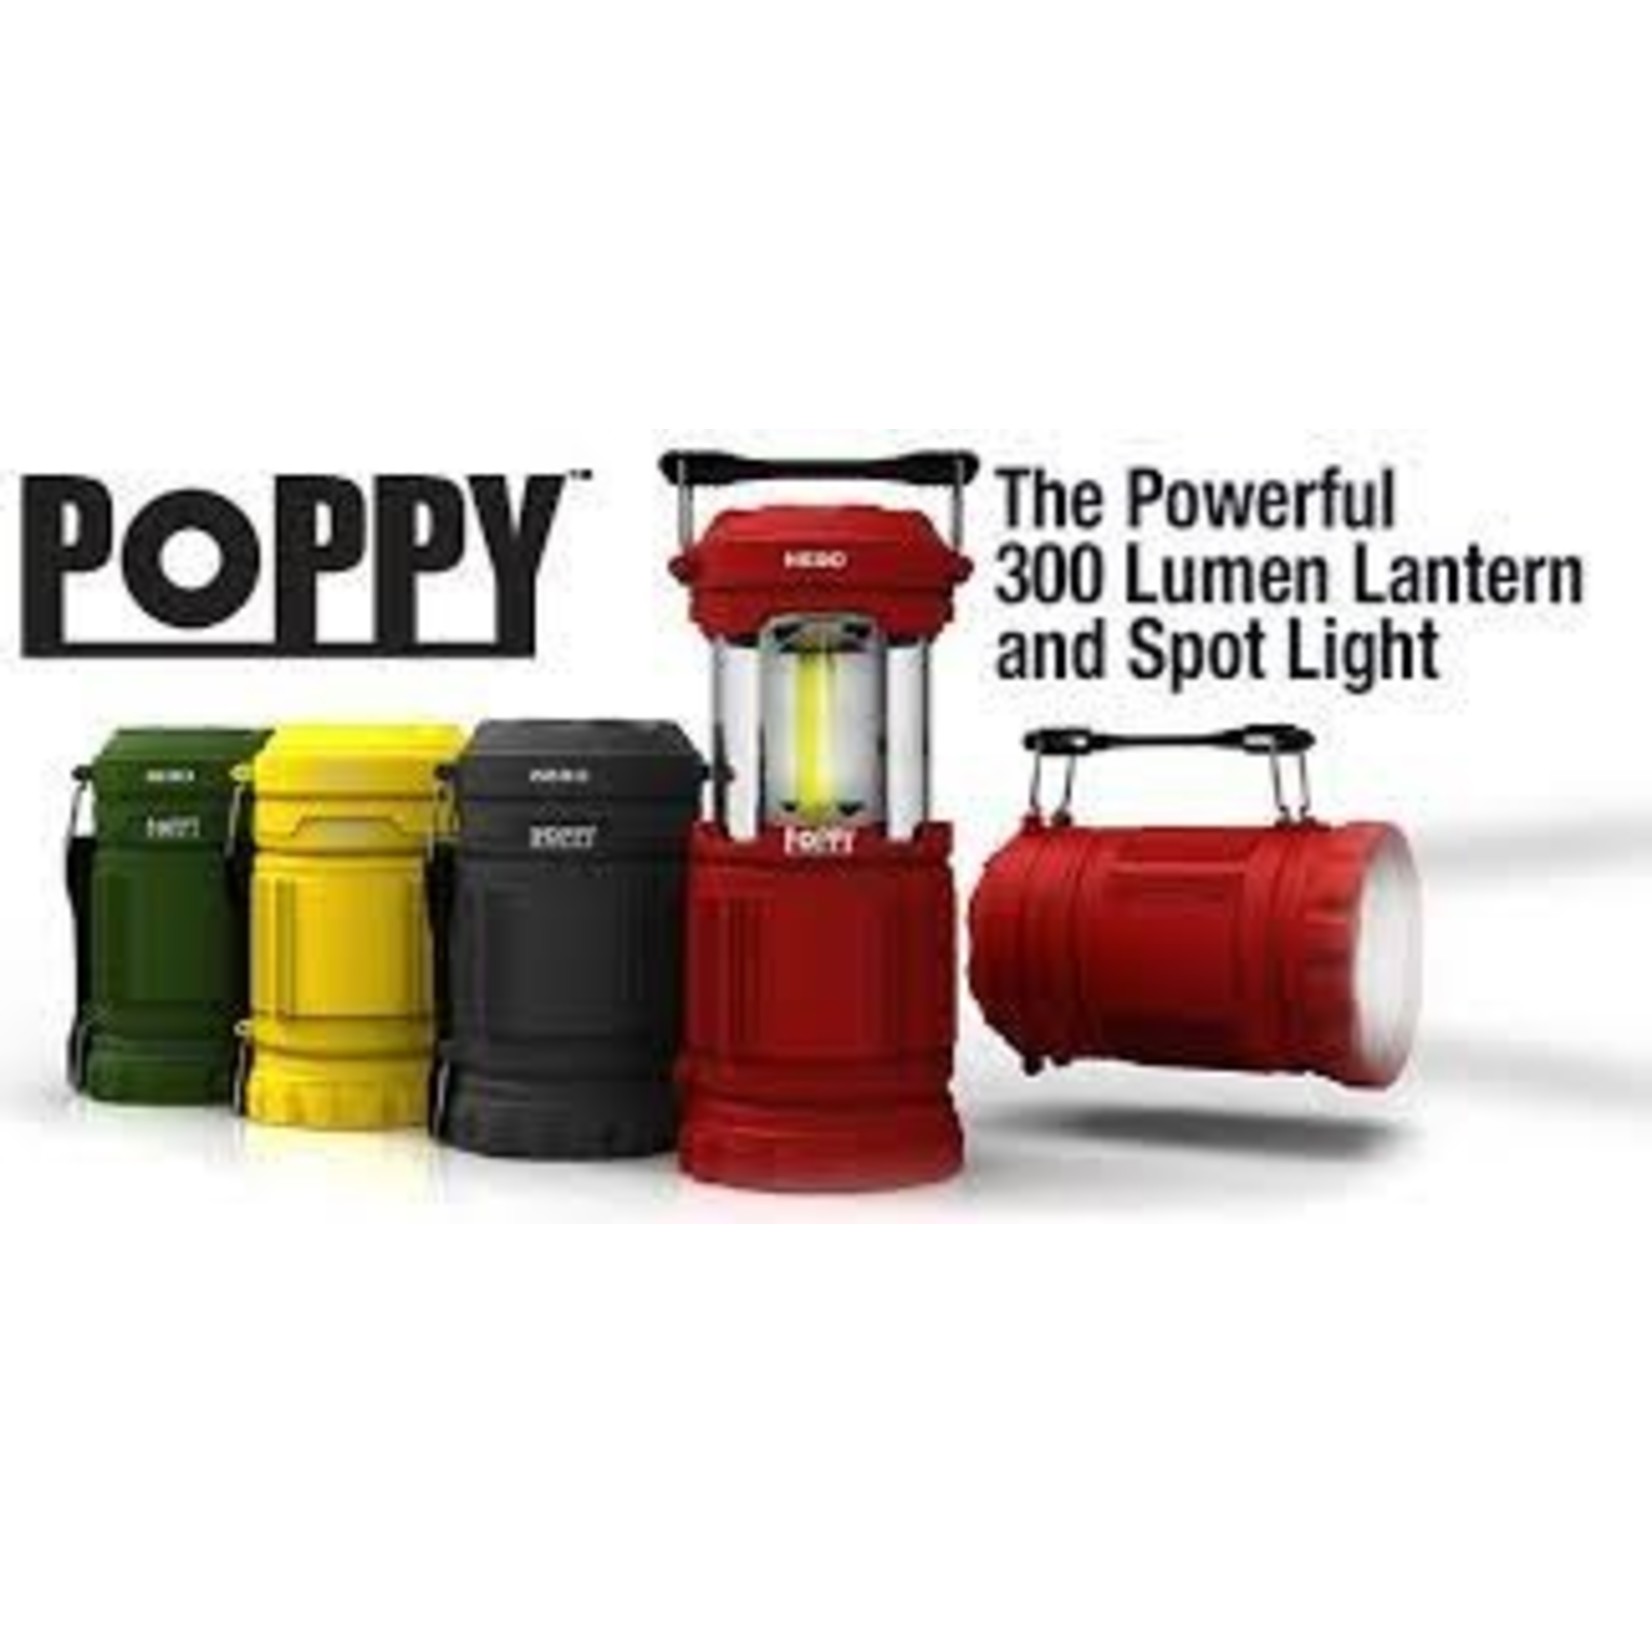 NEBO NEBO Poppy Flashlight Lantern